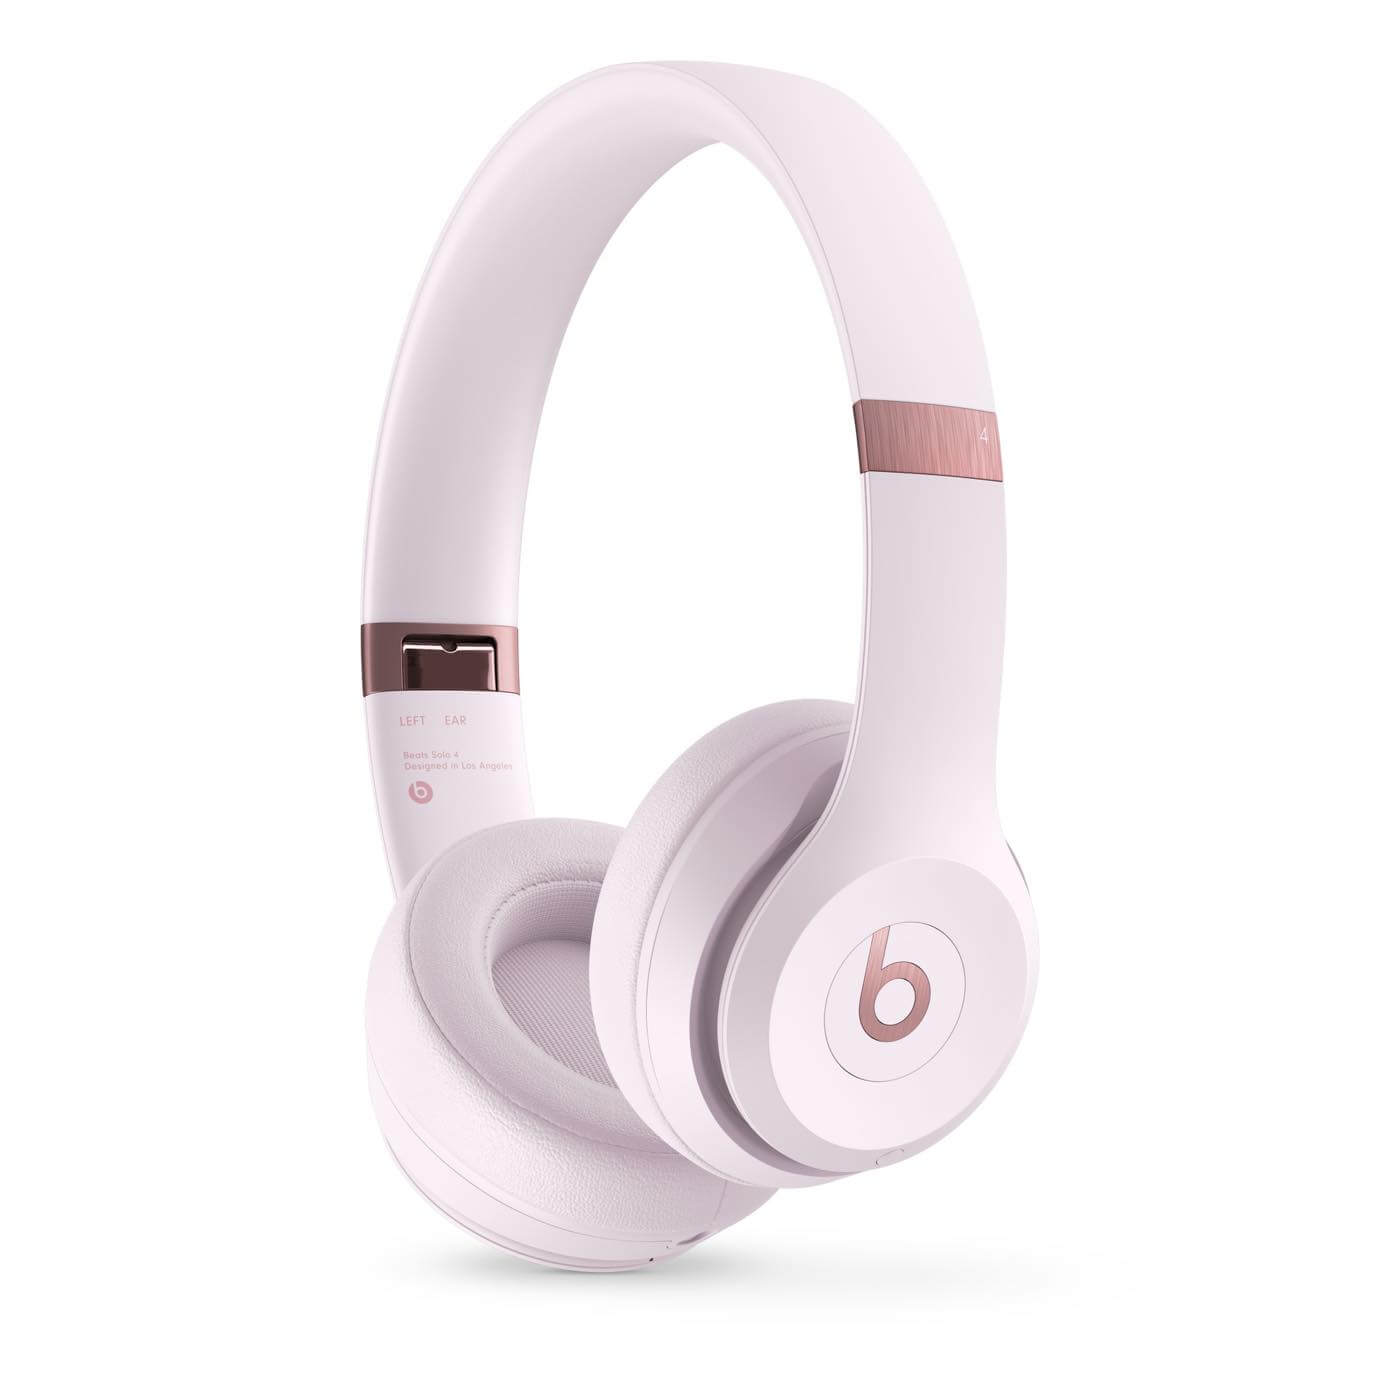 Beats、新型ワイヤレスヘッドフォン｢Beats Solo 4｣を発表・予約受付開始 ｰ 32,800円で5月14日に発売へ